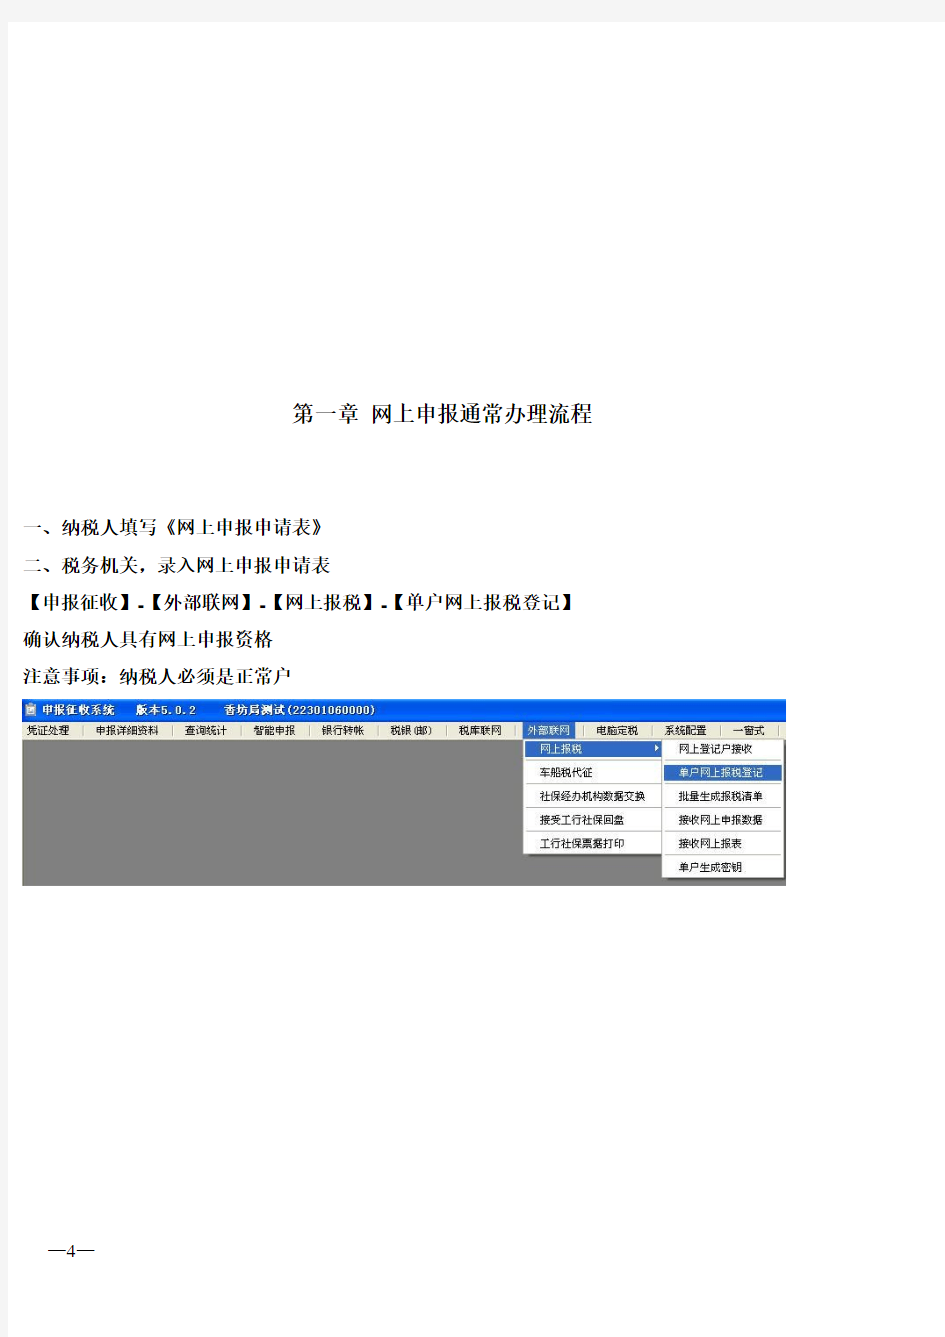 黑龙江省地方税务局网上申报系统图文说明书